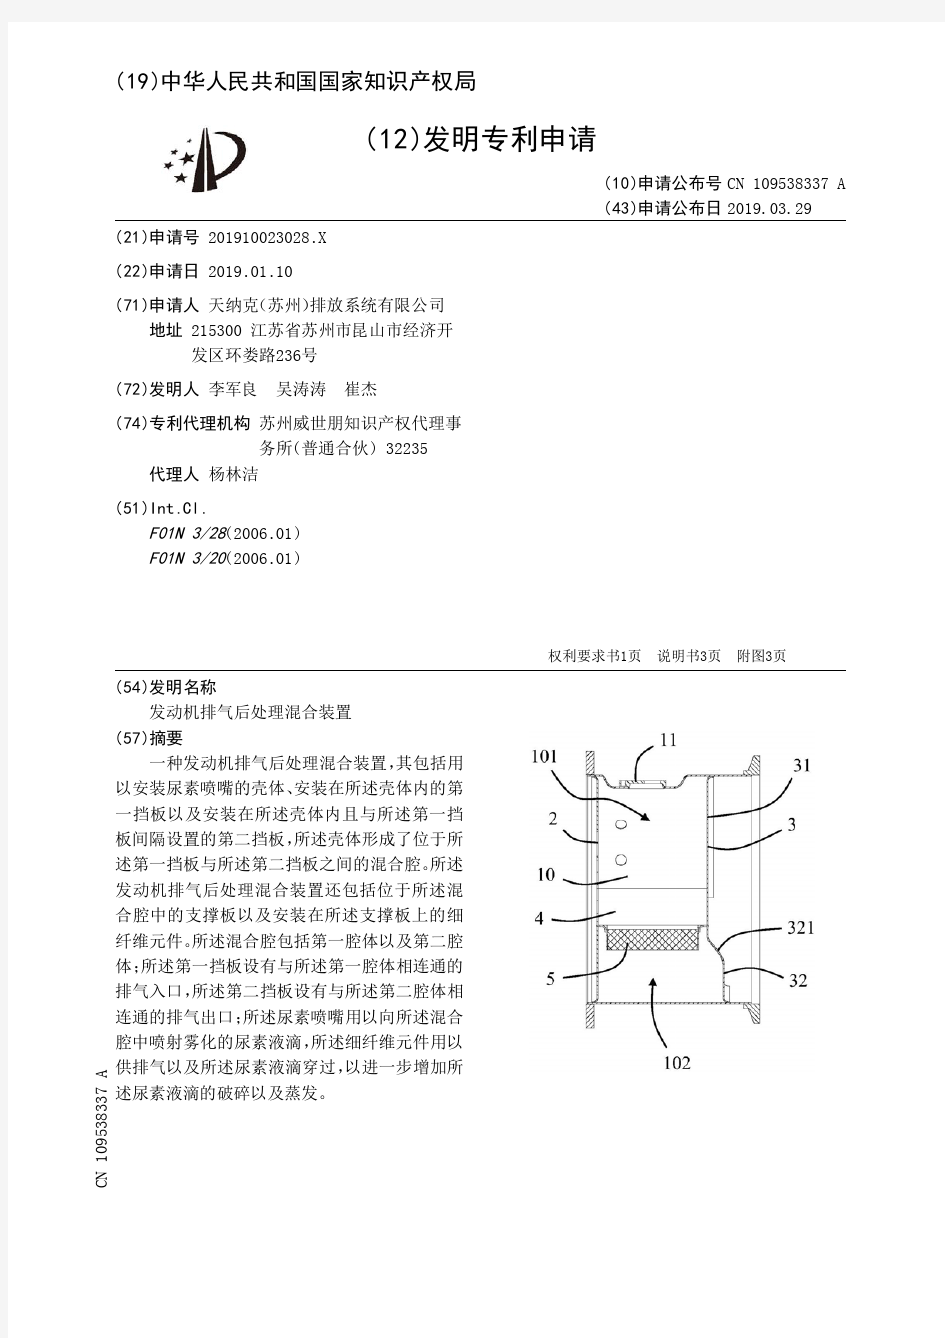 【CN109538337A】发动机排气后处理混合装置【专利】